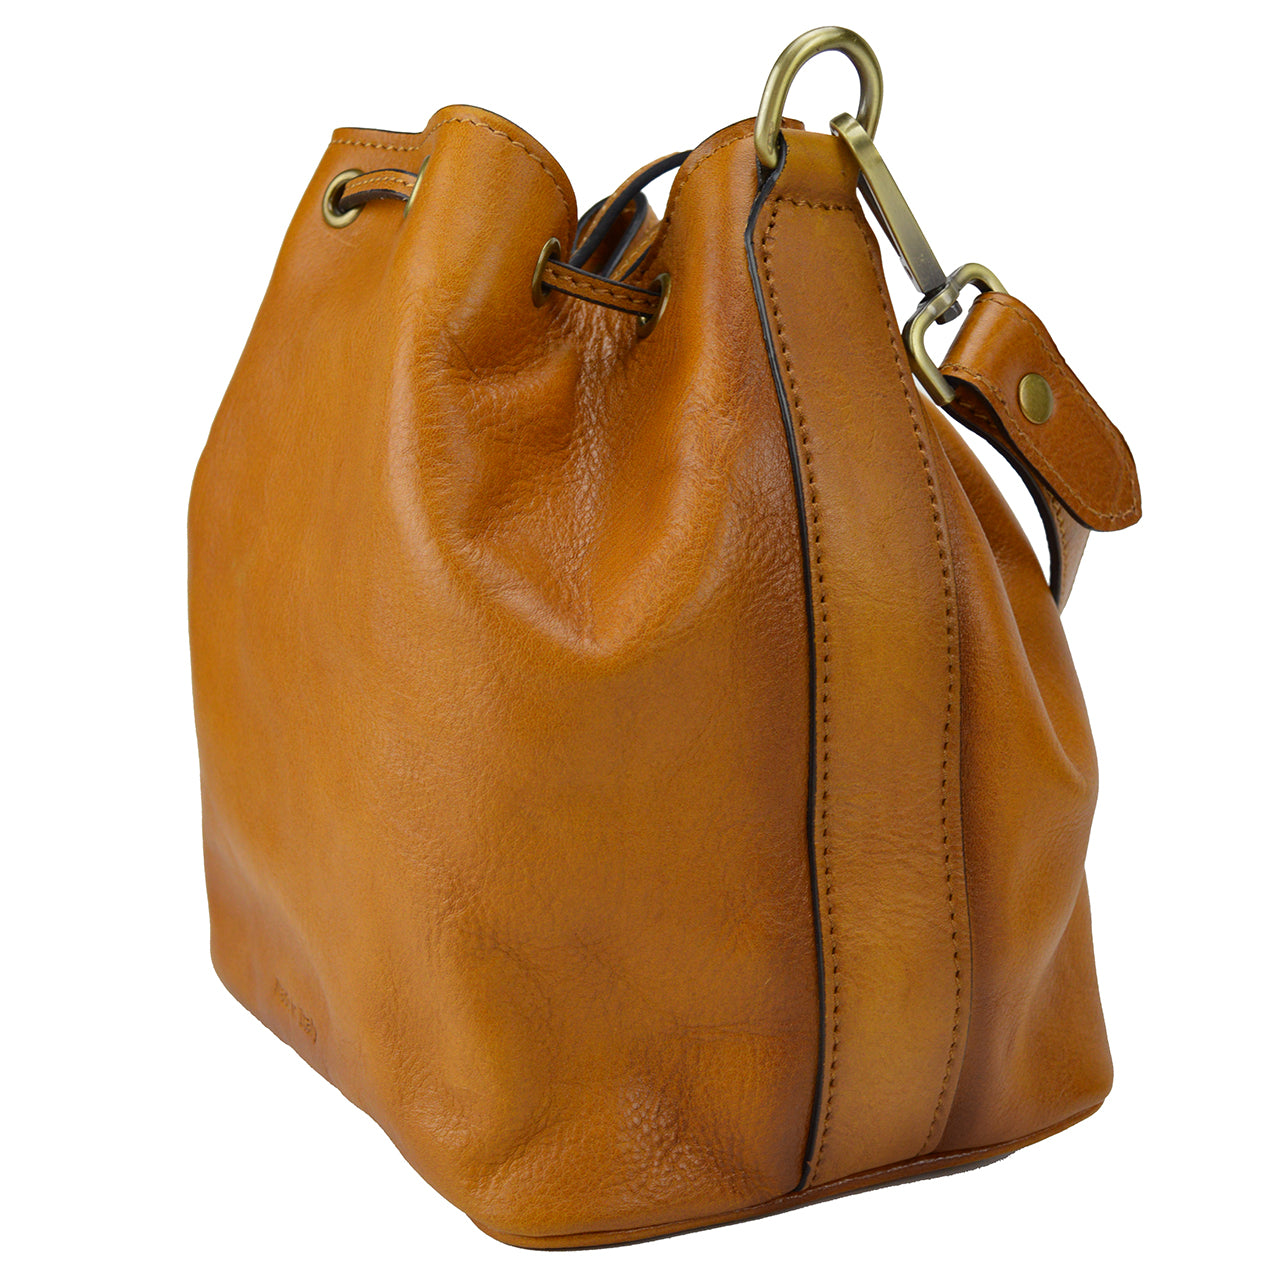 Pratesi Sorano Woman Bag in genuine Italian leather - Sorano Coffee